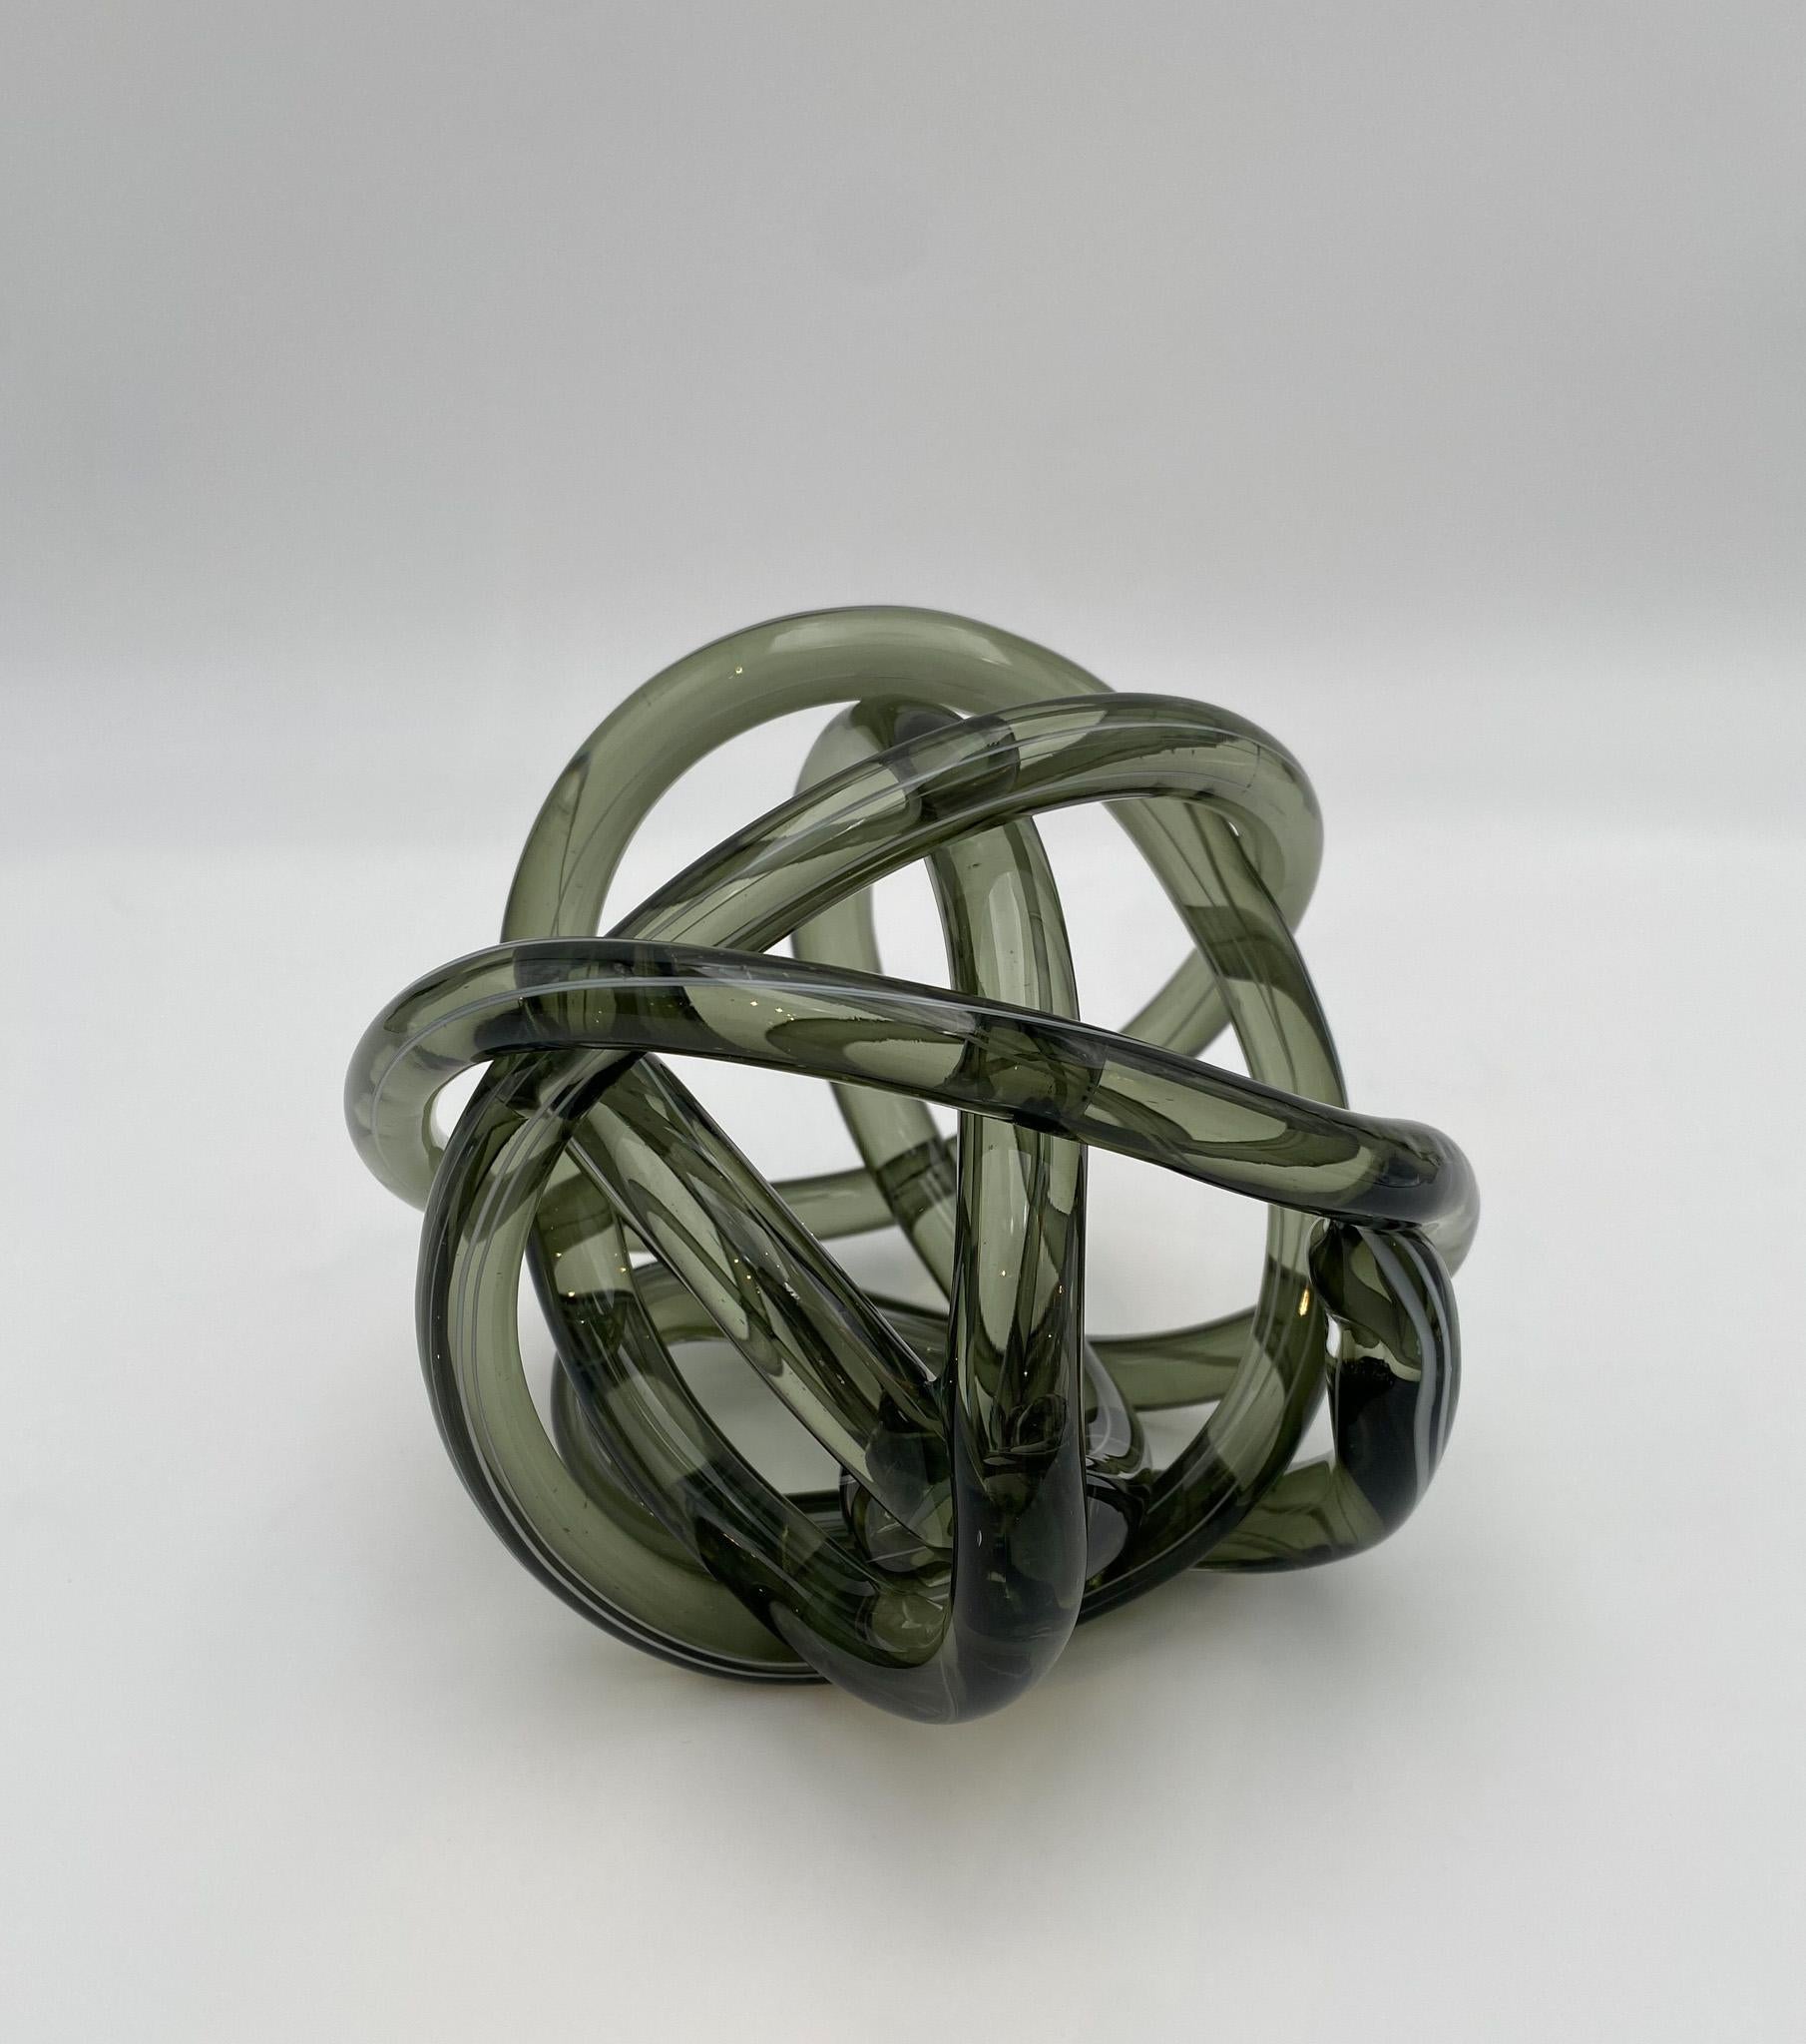 Abstract Art Glass Knot Sculpture  6